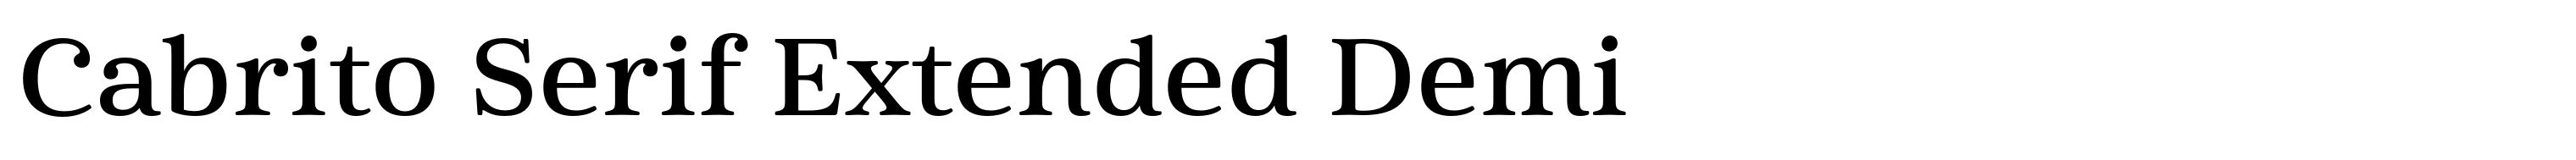 Cabrito Serif Extended Demi